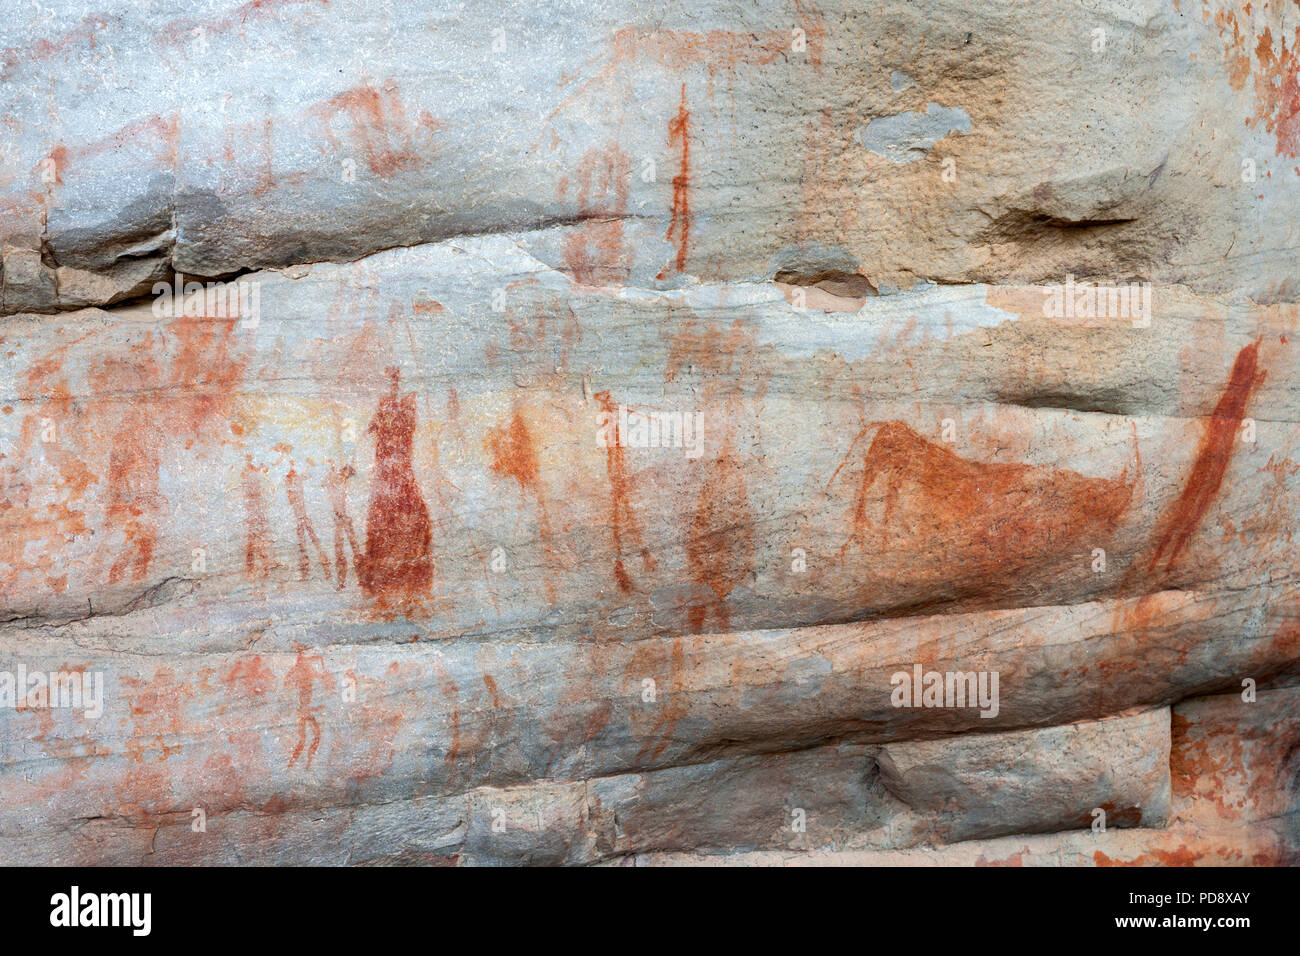 L'art rupestre San indigènes sur les murs d'une grotte dans les montagnes Cederberg en Afrique du Sud. Banque D'Images